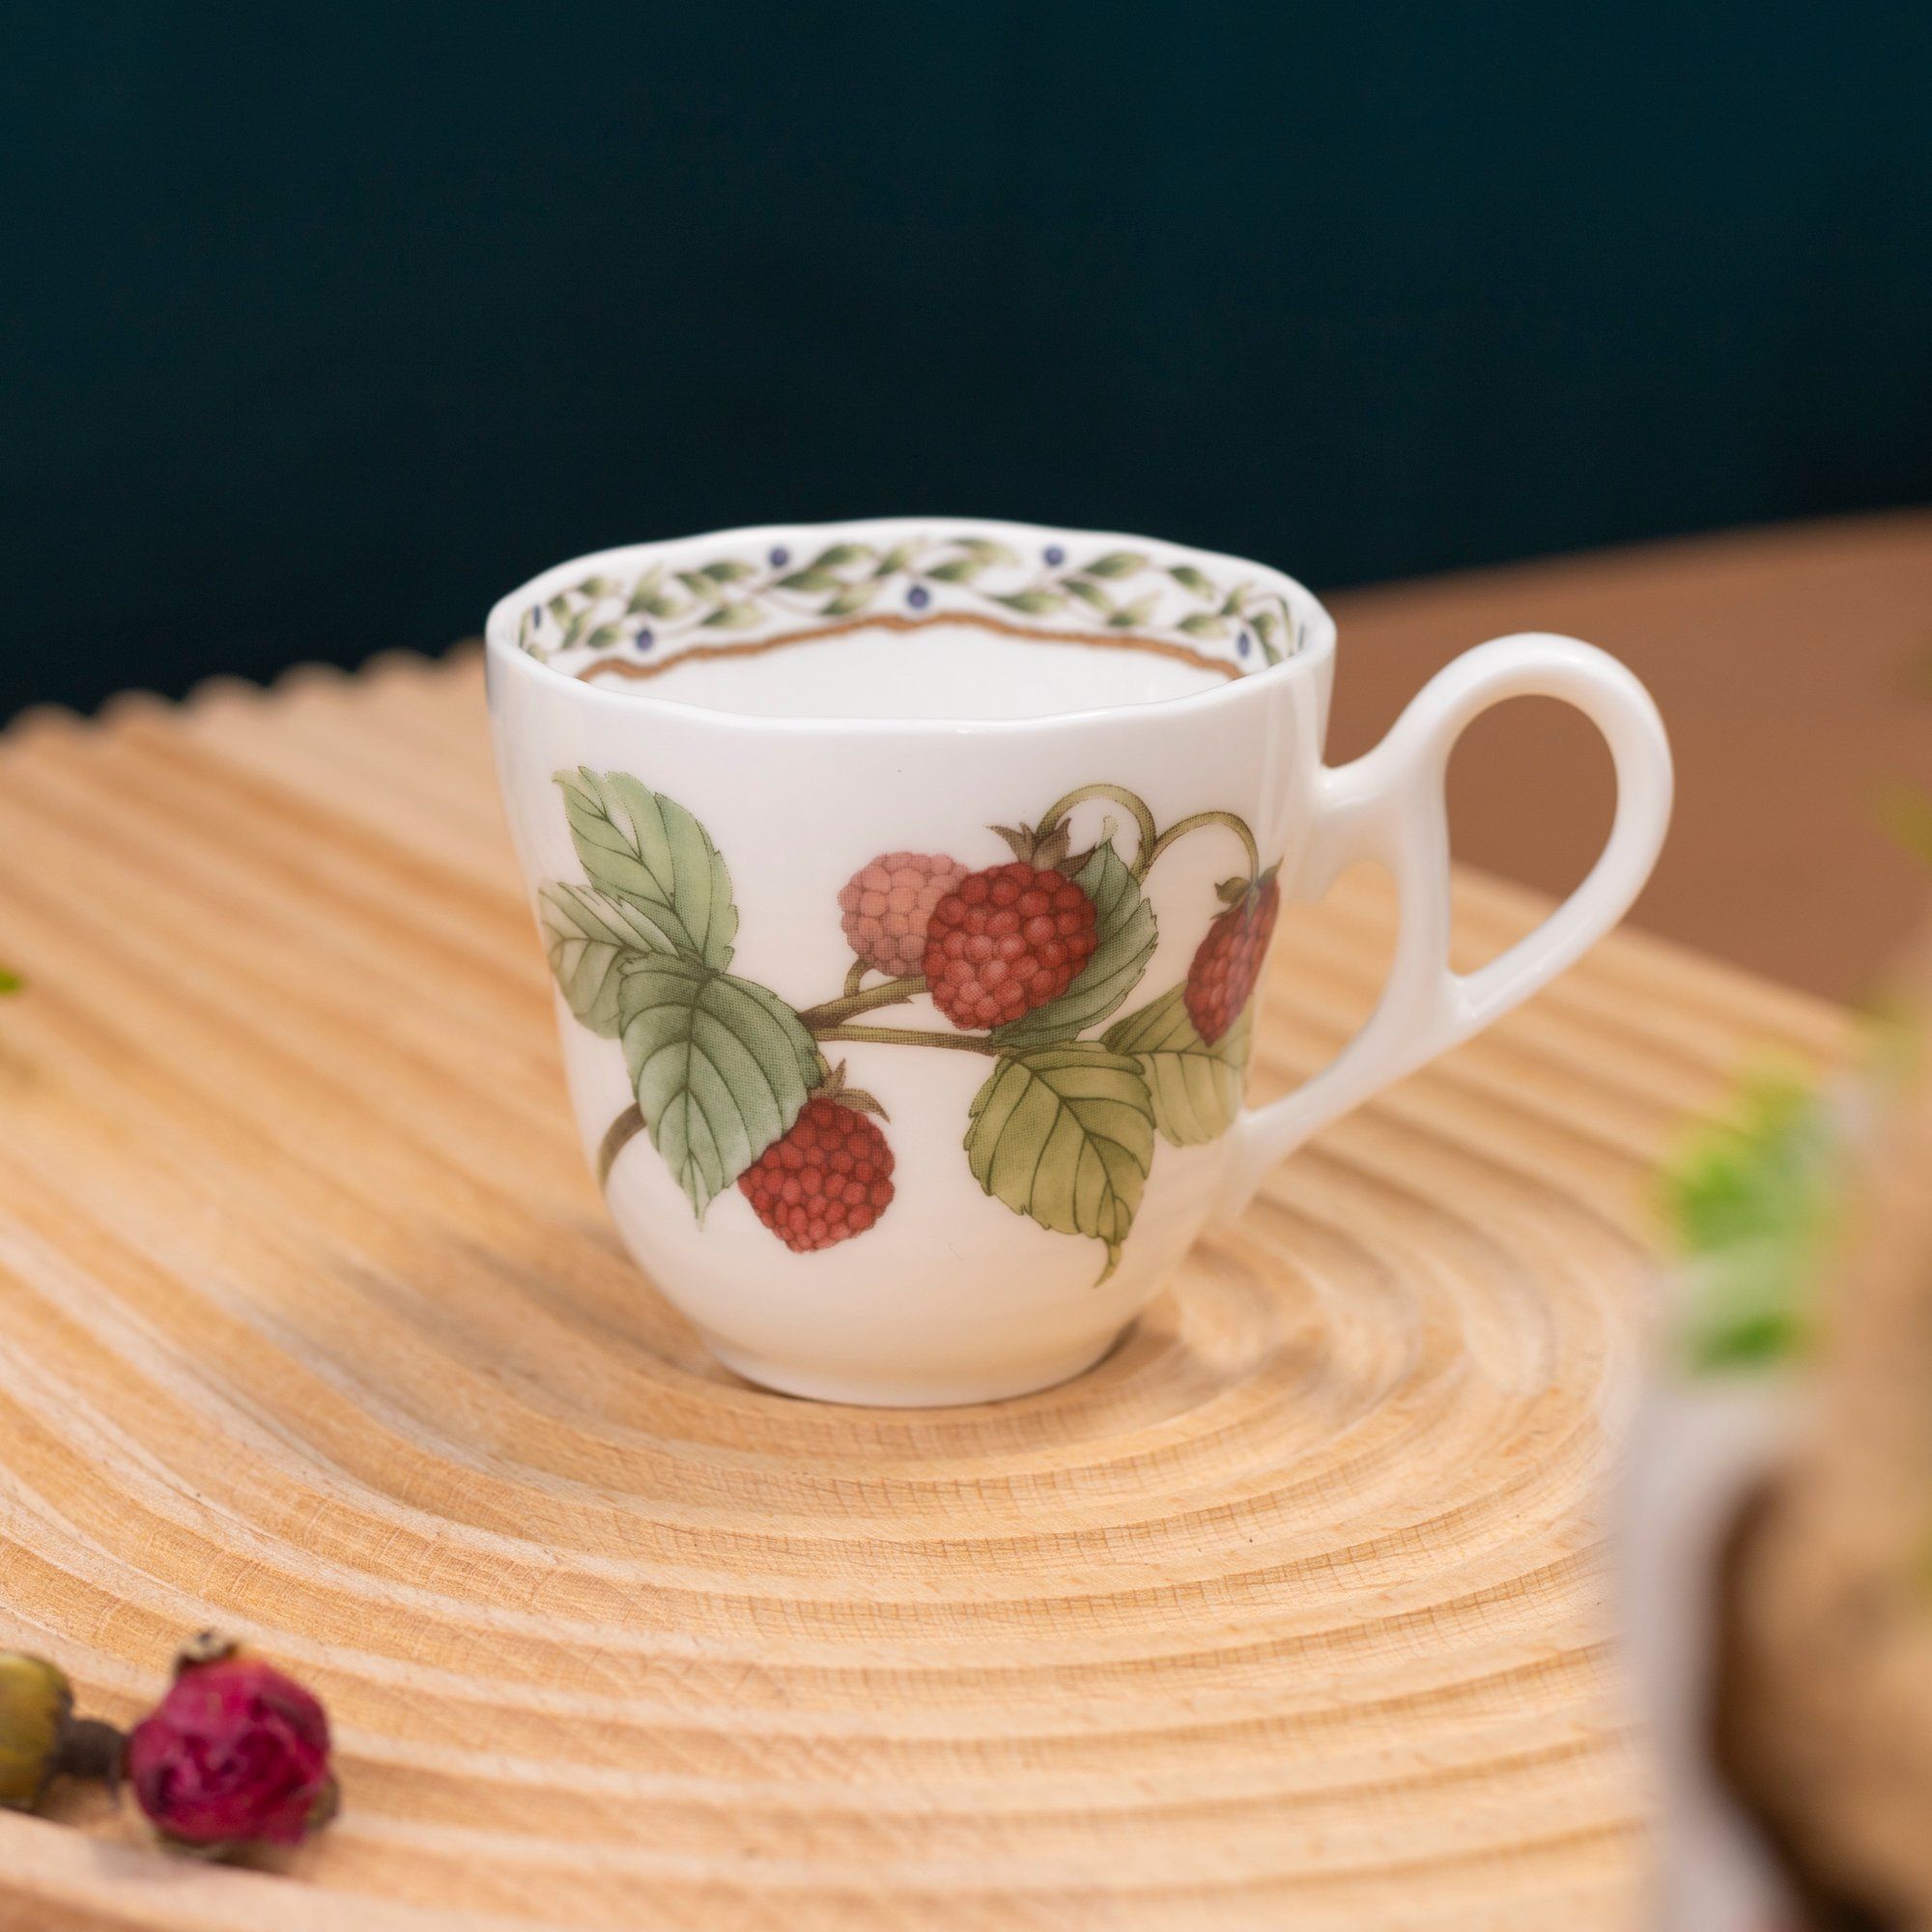  Bộ ấm chén uống trà 13 món (ấm nhỏ 600ml) sứ xương cao cấp | Orchard Garden 4911L-T014S 